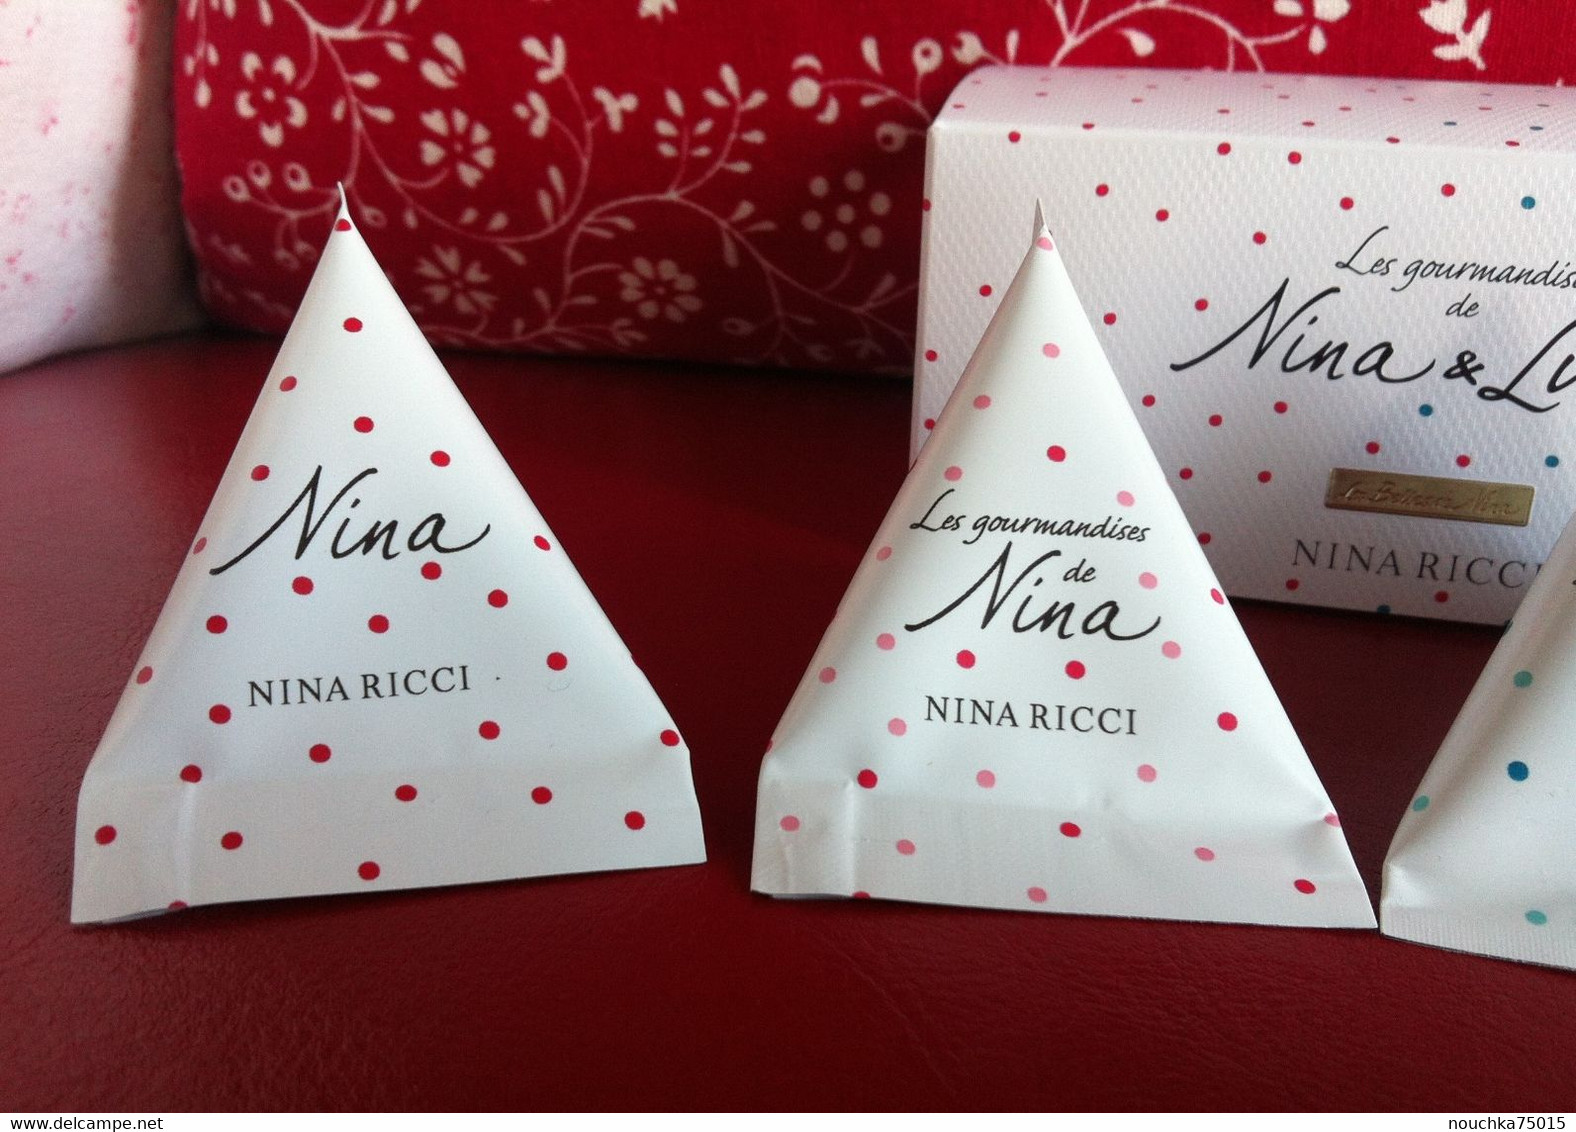 Nina Ricci - Les Gourmandises De Nina Et Luna - Prodotti Di Bellezza